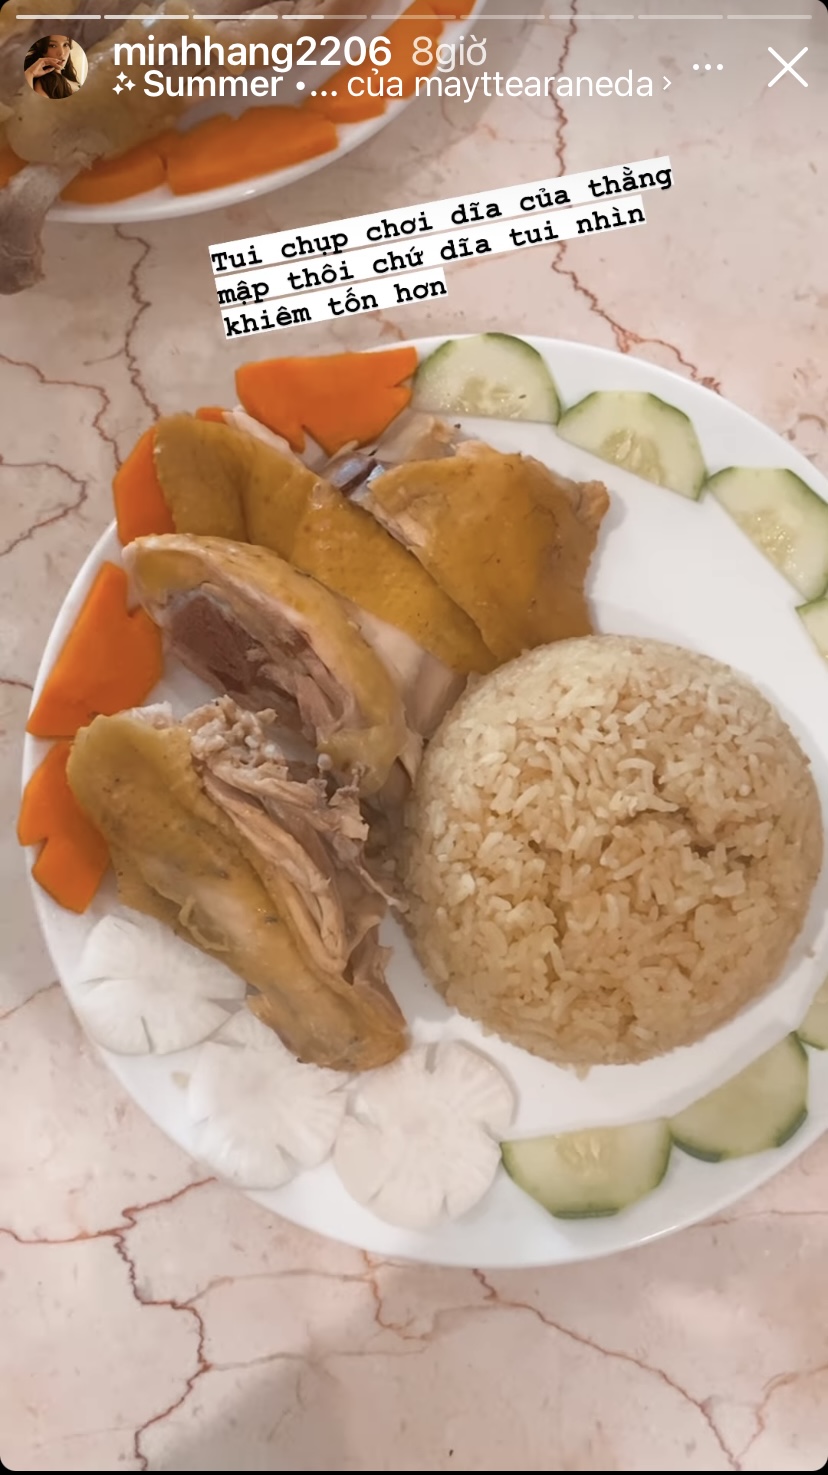 Cơm gà ăn kèm đồ chưa và dưa leo là những món ăn xuất hiện trong bữa cơm nhà Minh Hằng hôm nay.